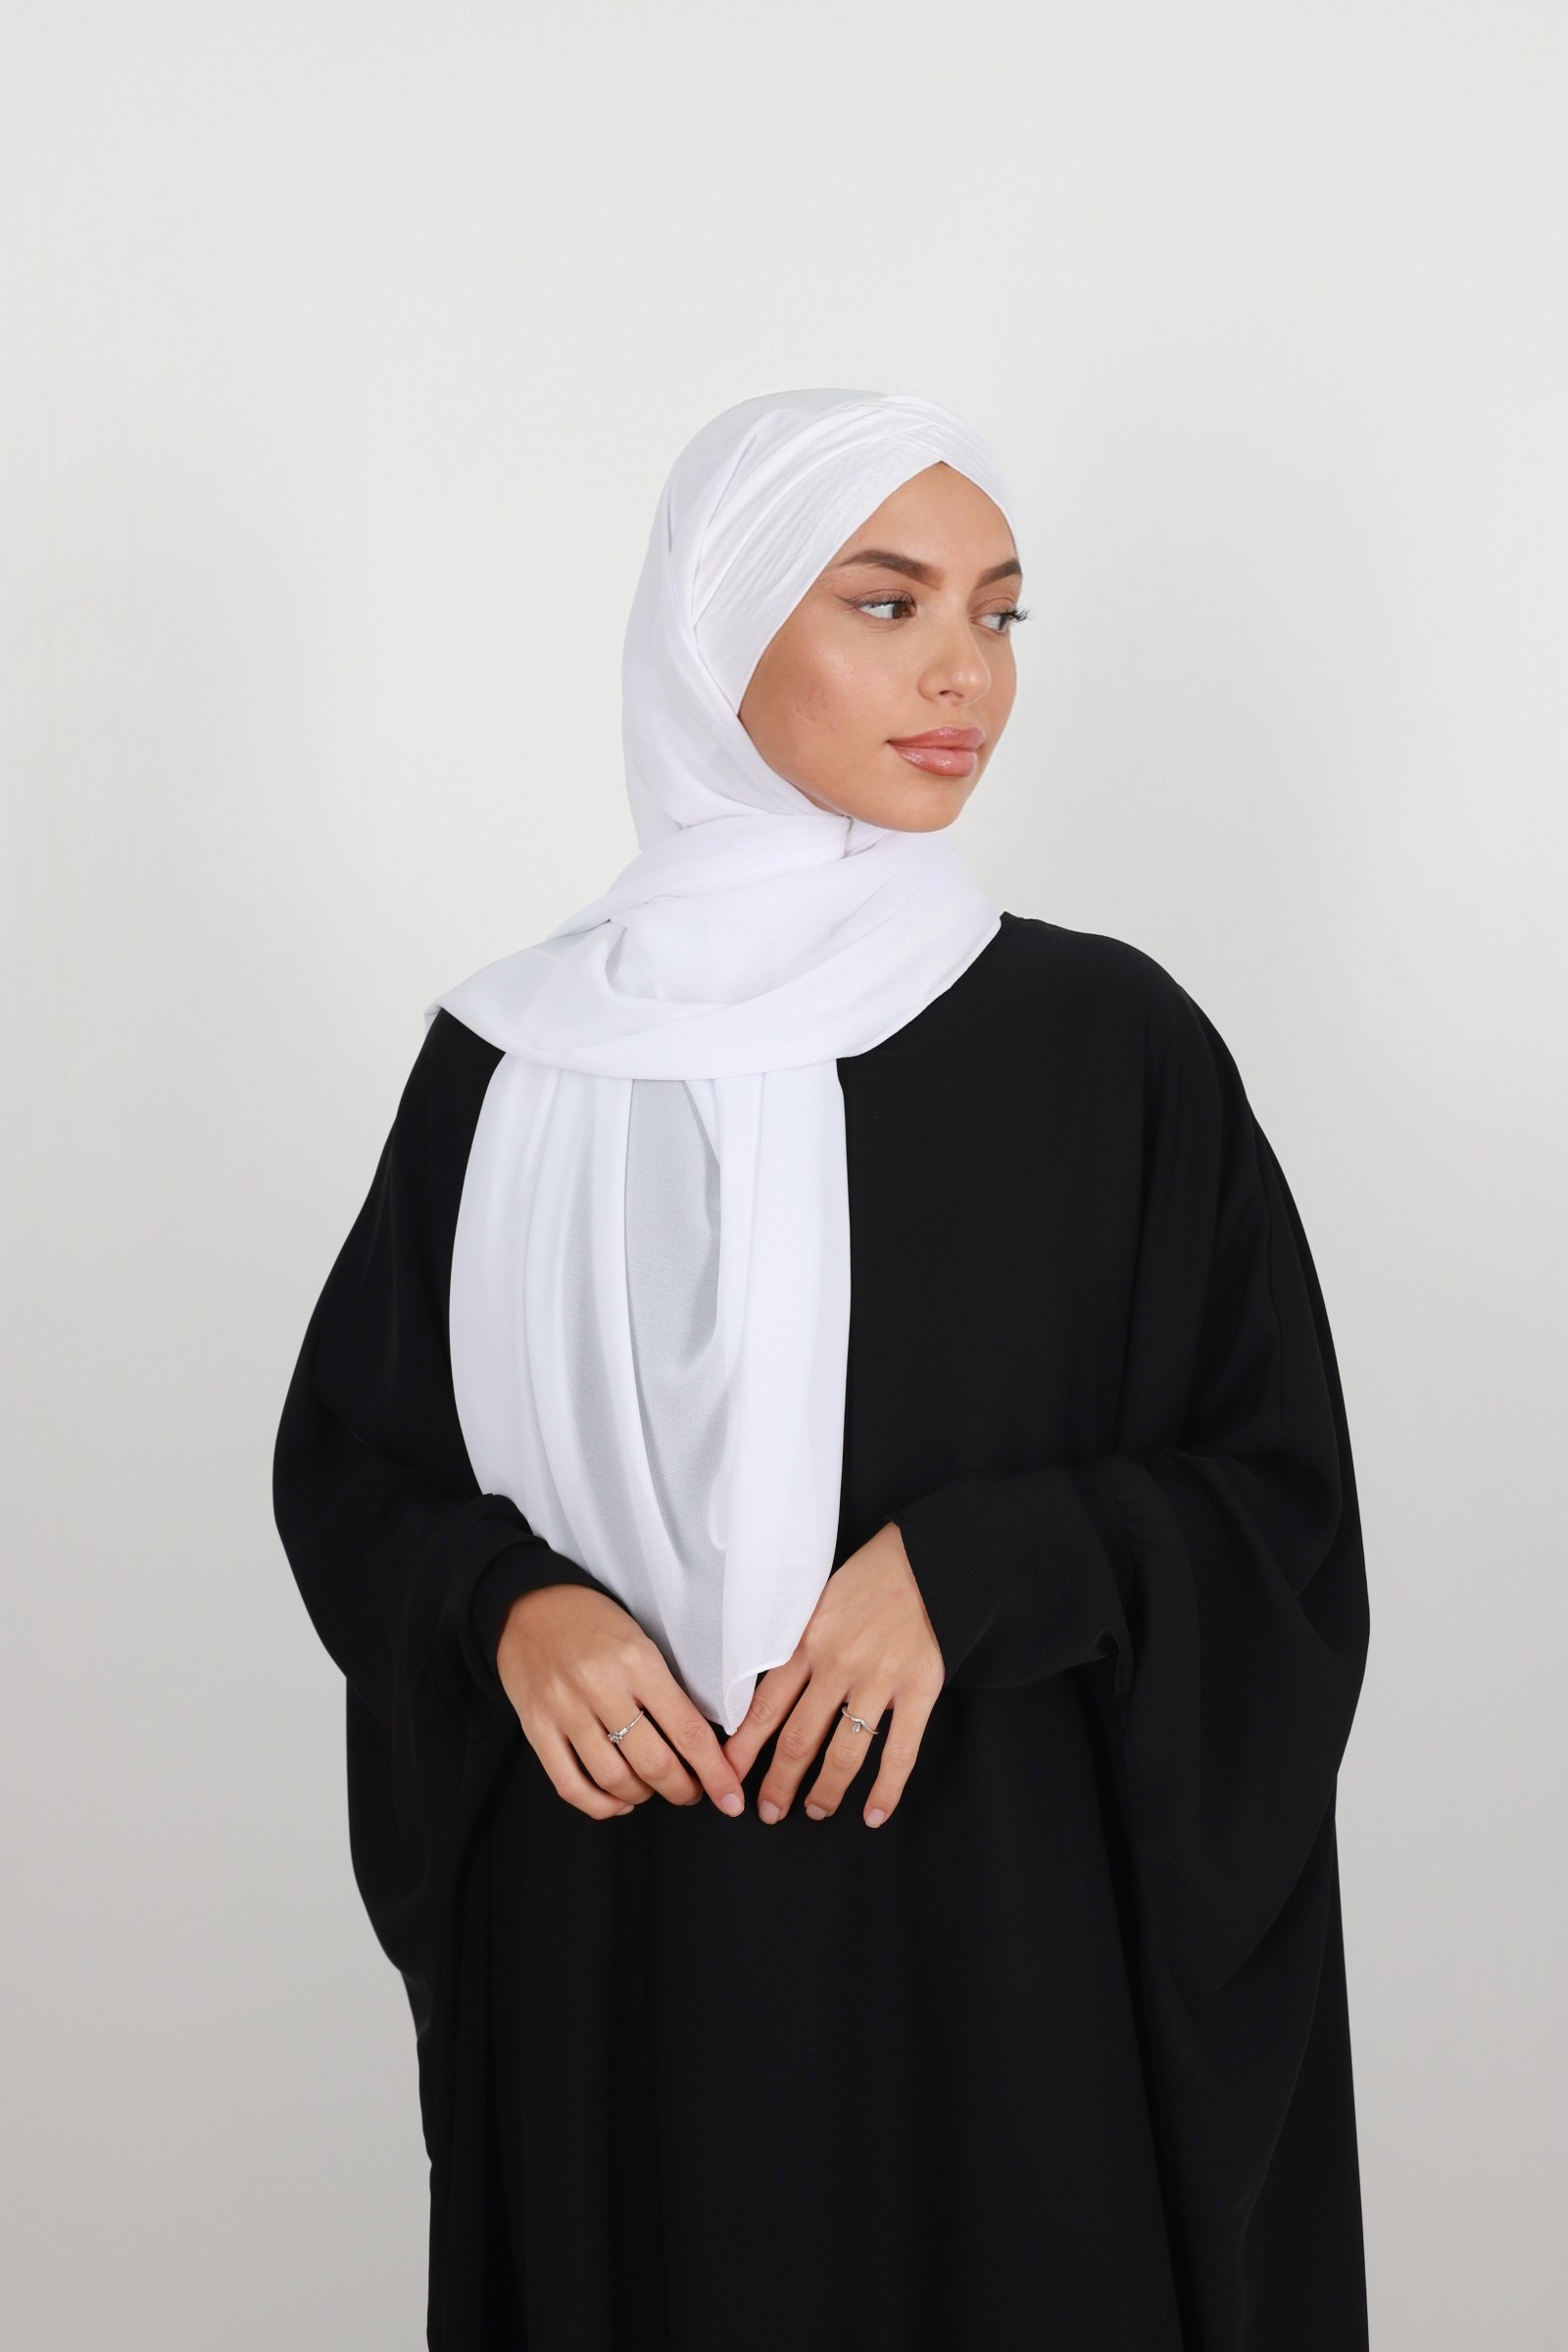 Hijab à enfiler facile à mettre au quotidien pas chère